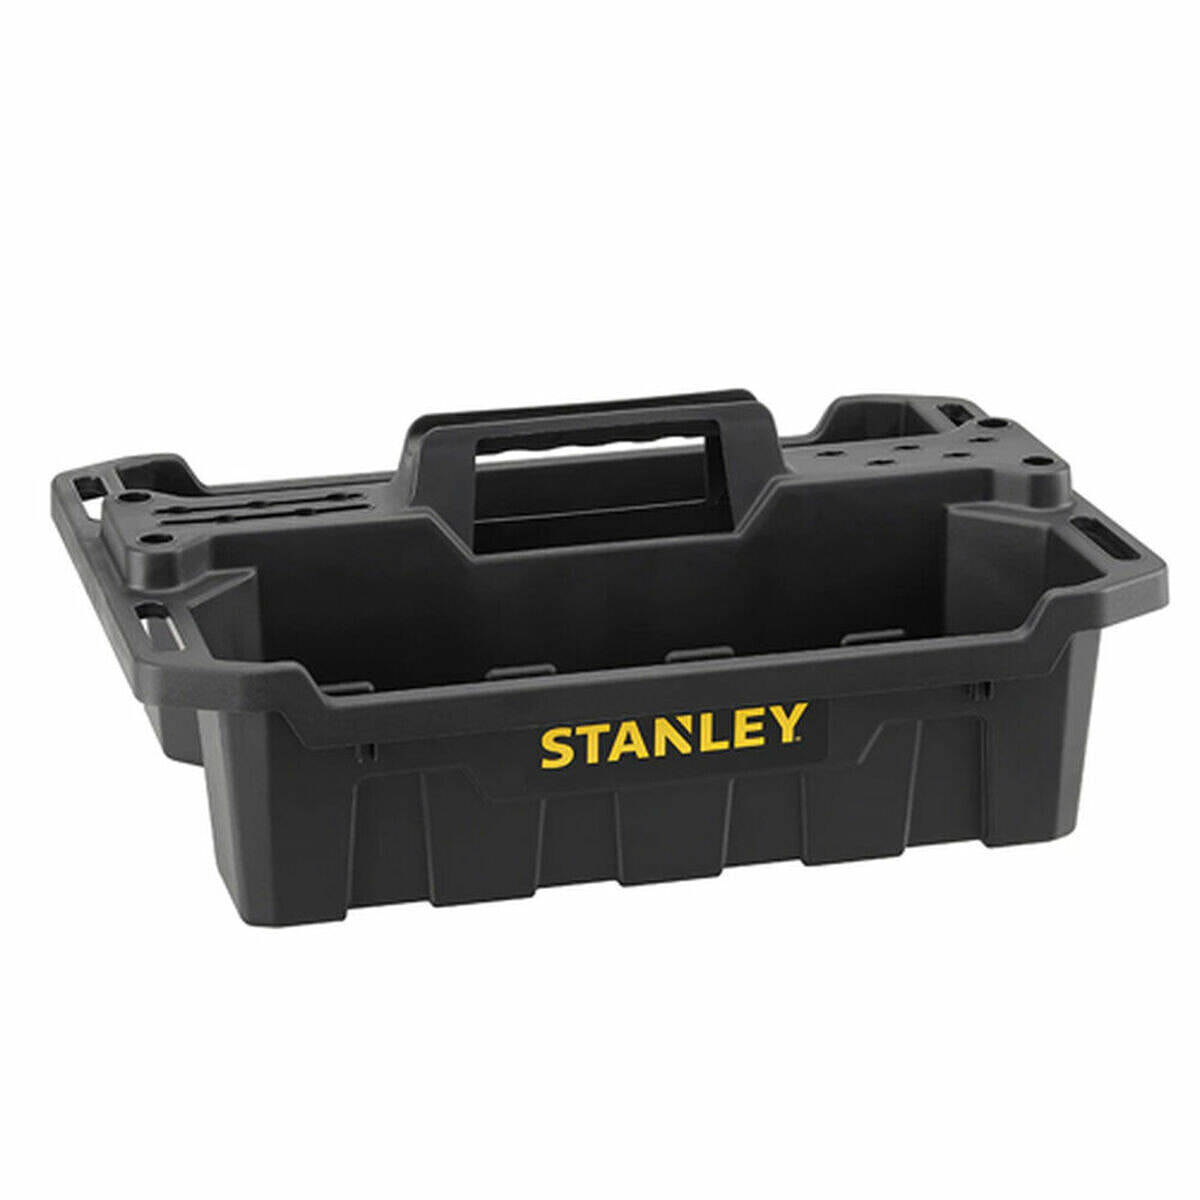 Ящик для инструментов Stanley (49,9 x 33,5 x 19,5 cm)